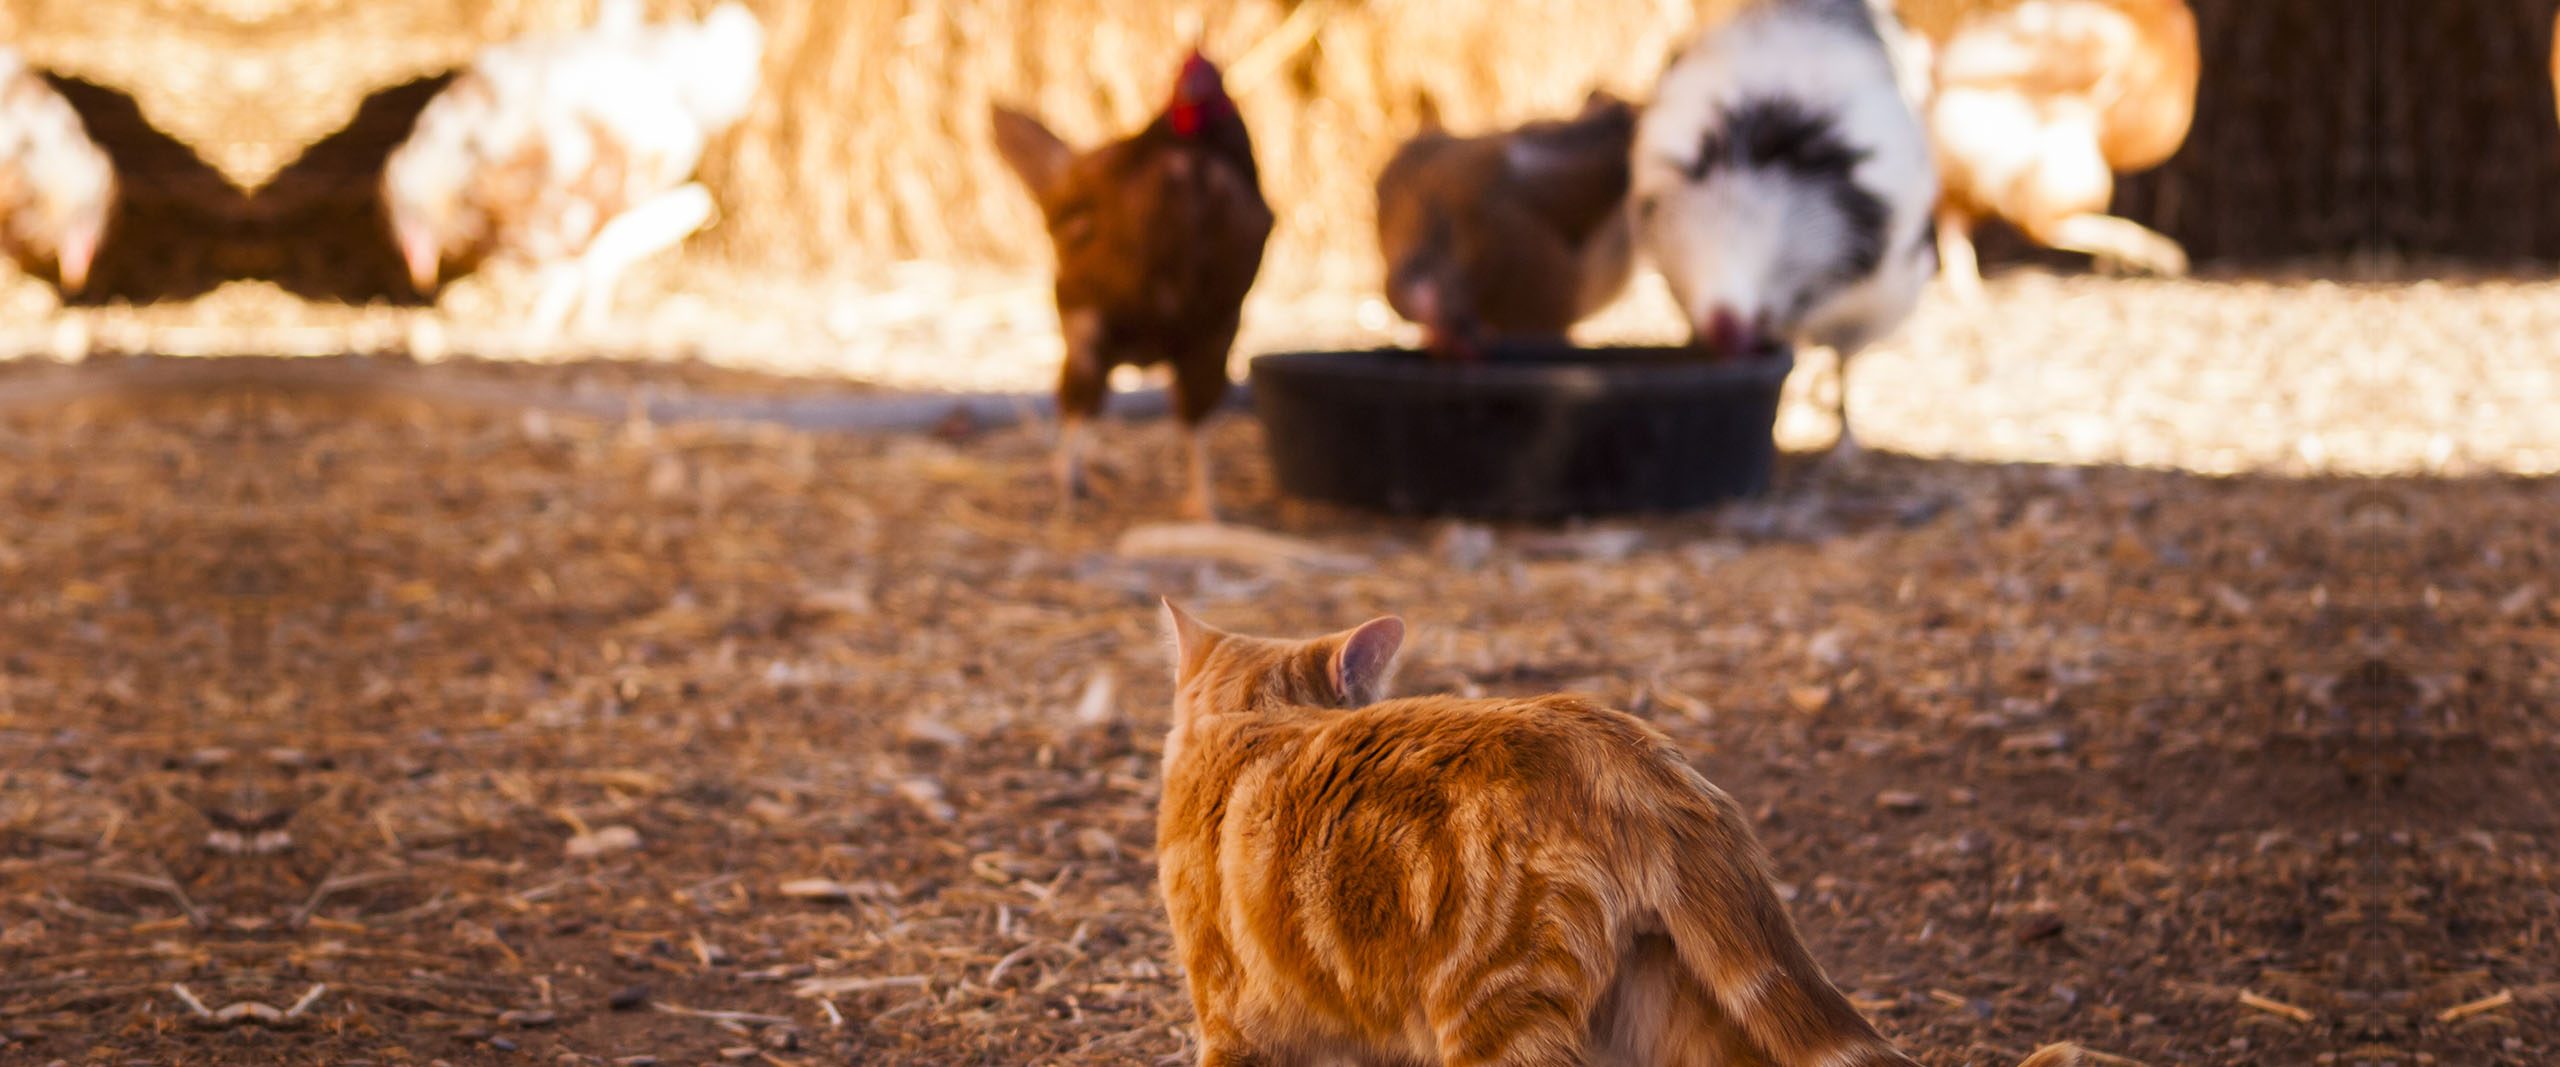 Misteriosa muerte masiva de gallinas, perros y gatos en Santa Juana apunta a envenenamiento químico